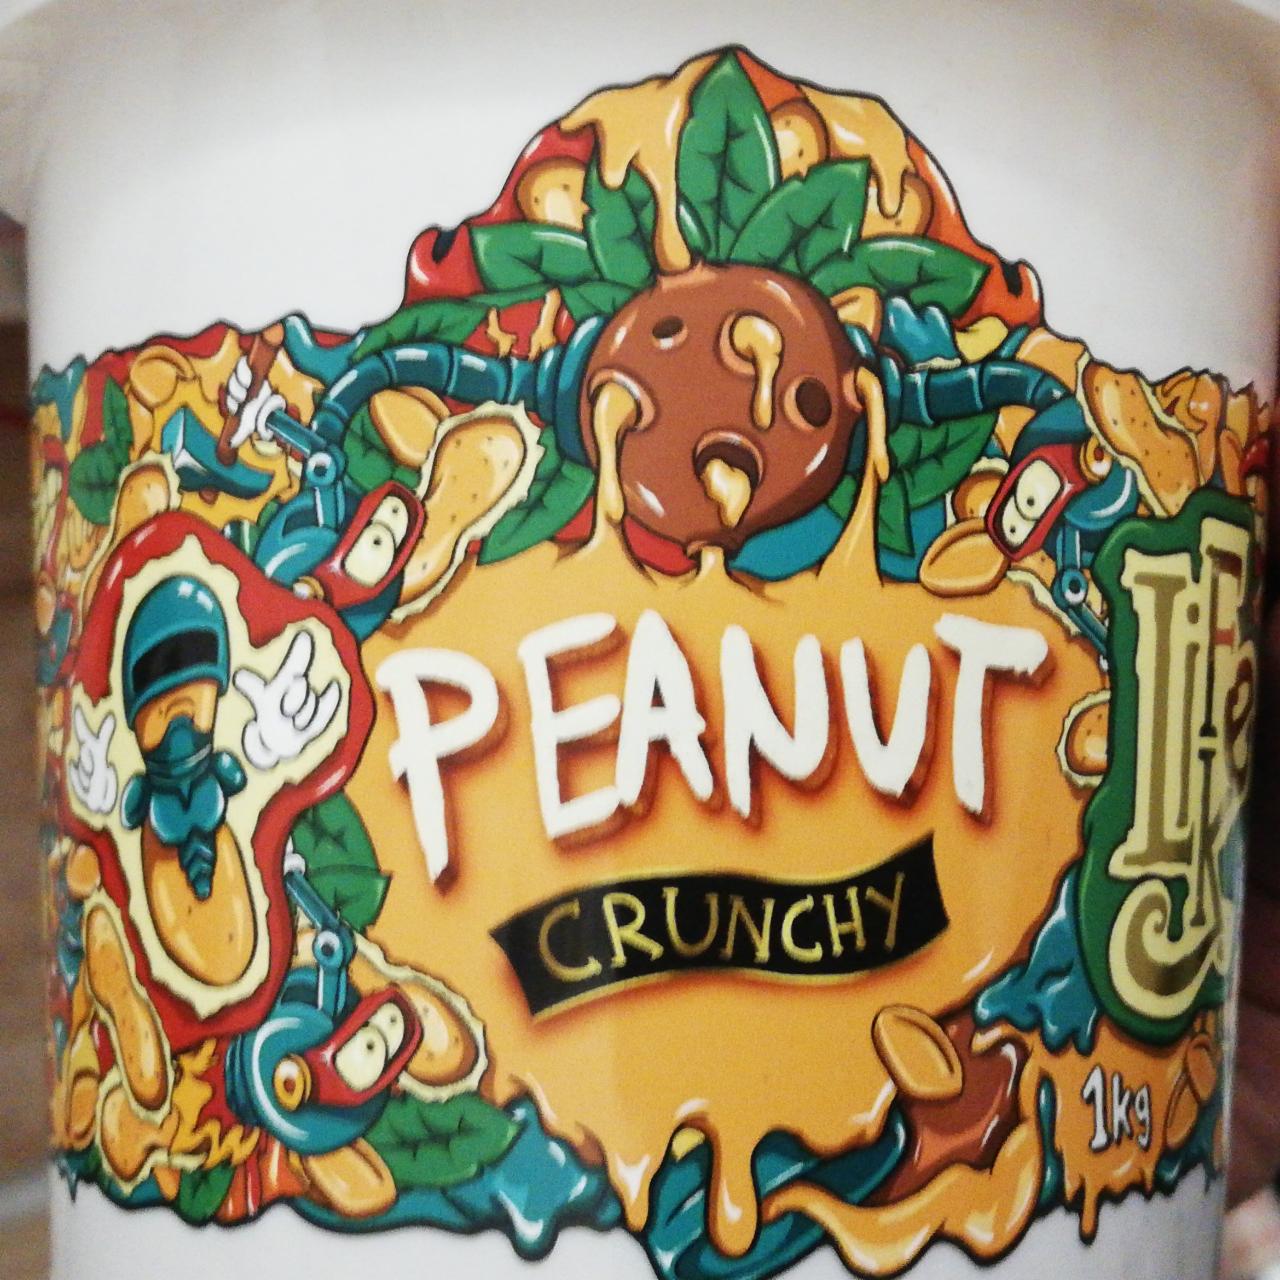 Fotografie - Arašidový krém s kousky arašídů Peanut Crunchy LifeLike